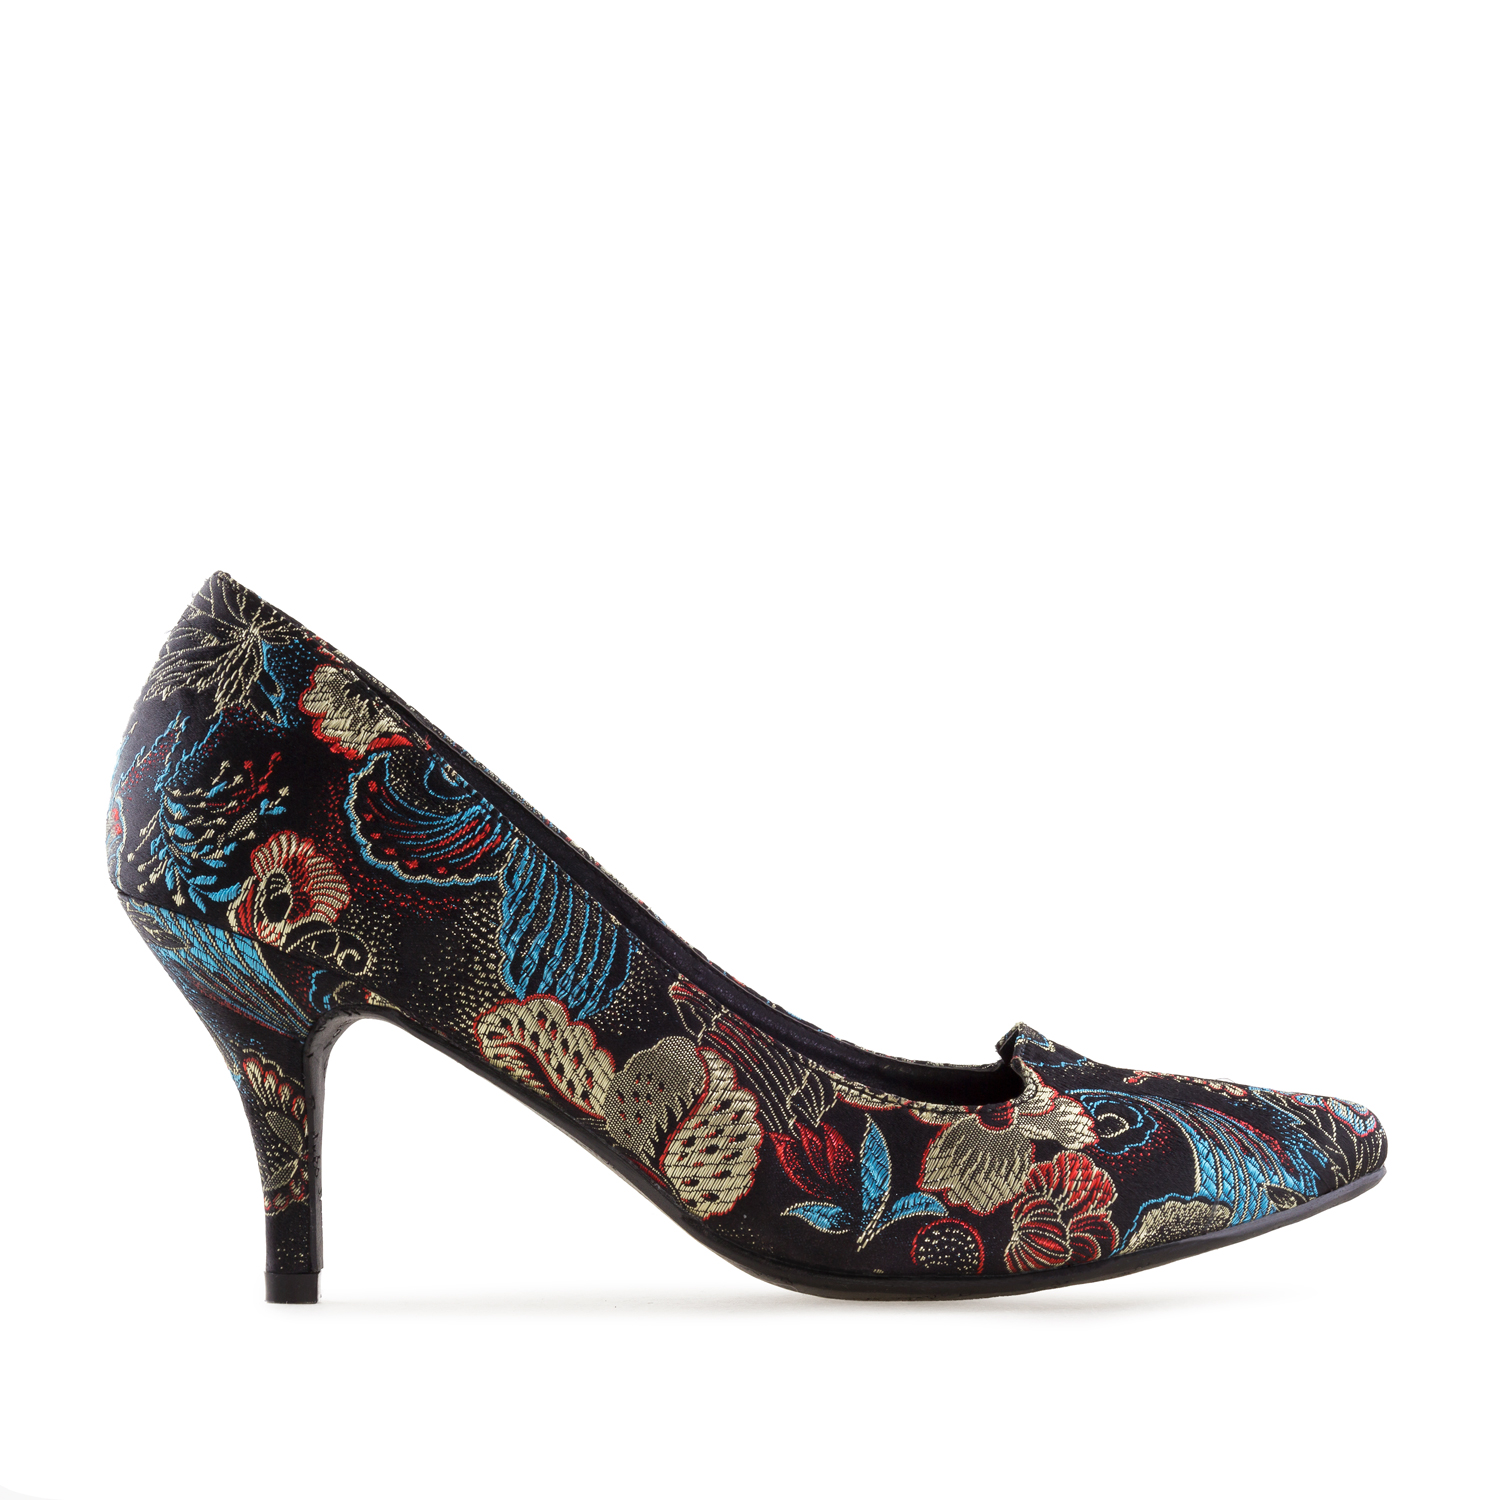 floral court shoes